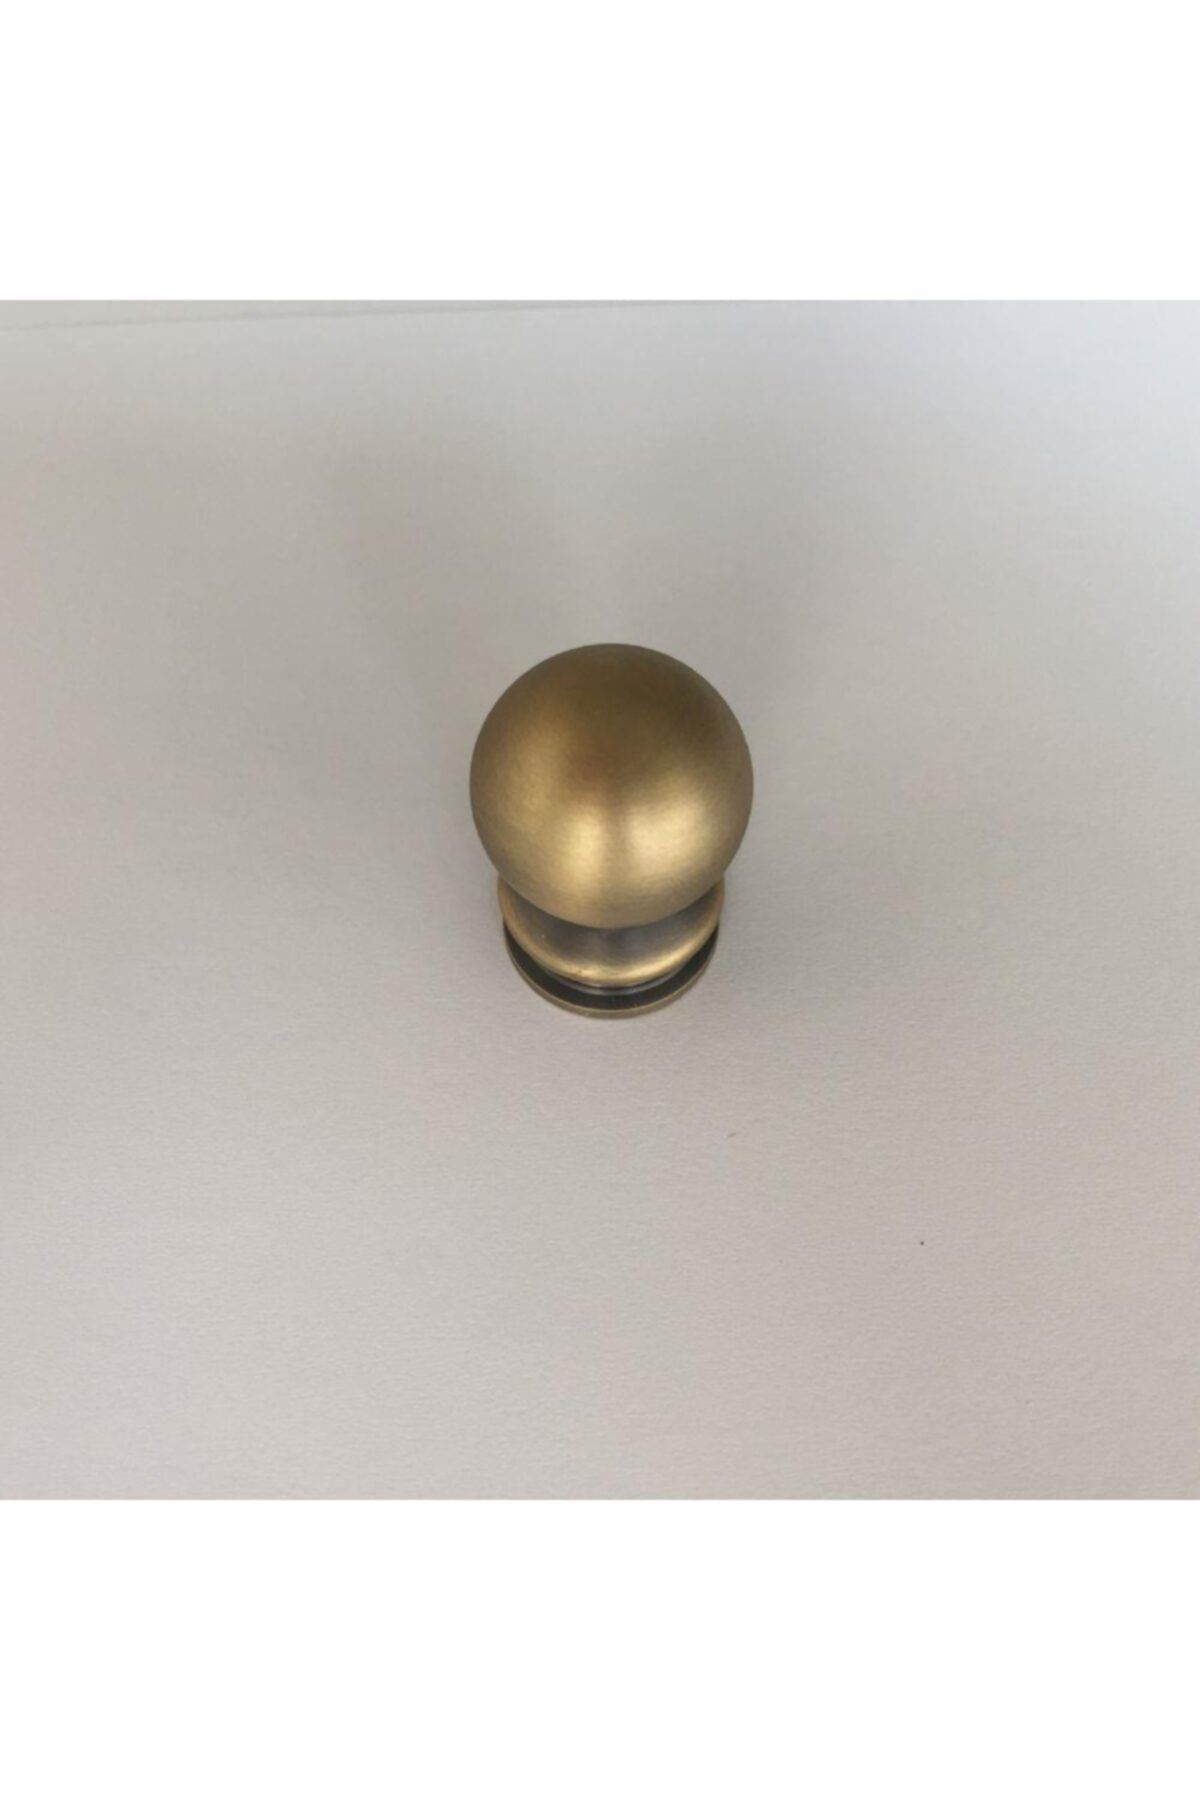 bablife Küçük Misket Küre Düğme Antik Sarı 19mm Çapında Çekmece Dolap Mobilya Kulpları